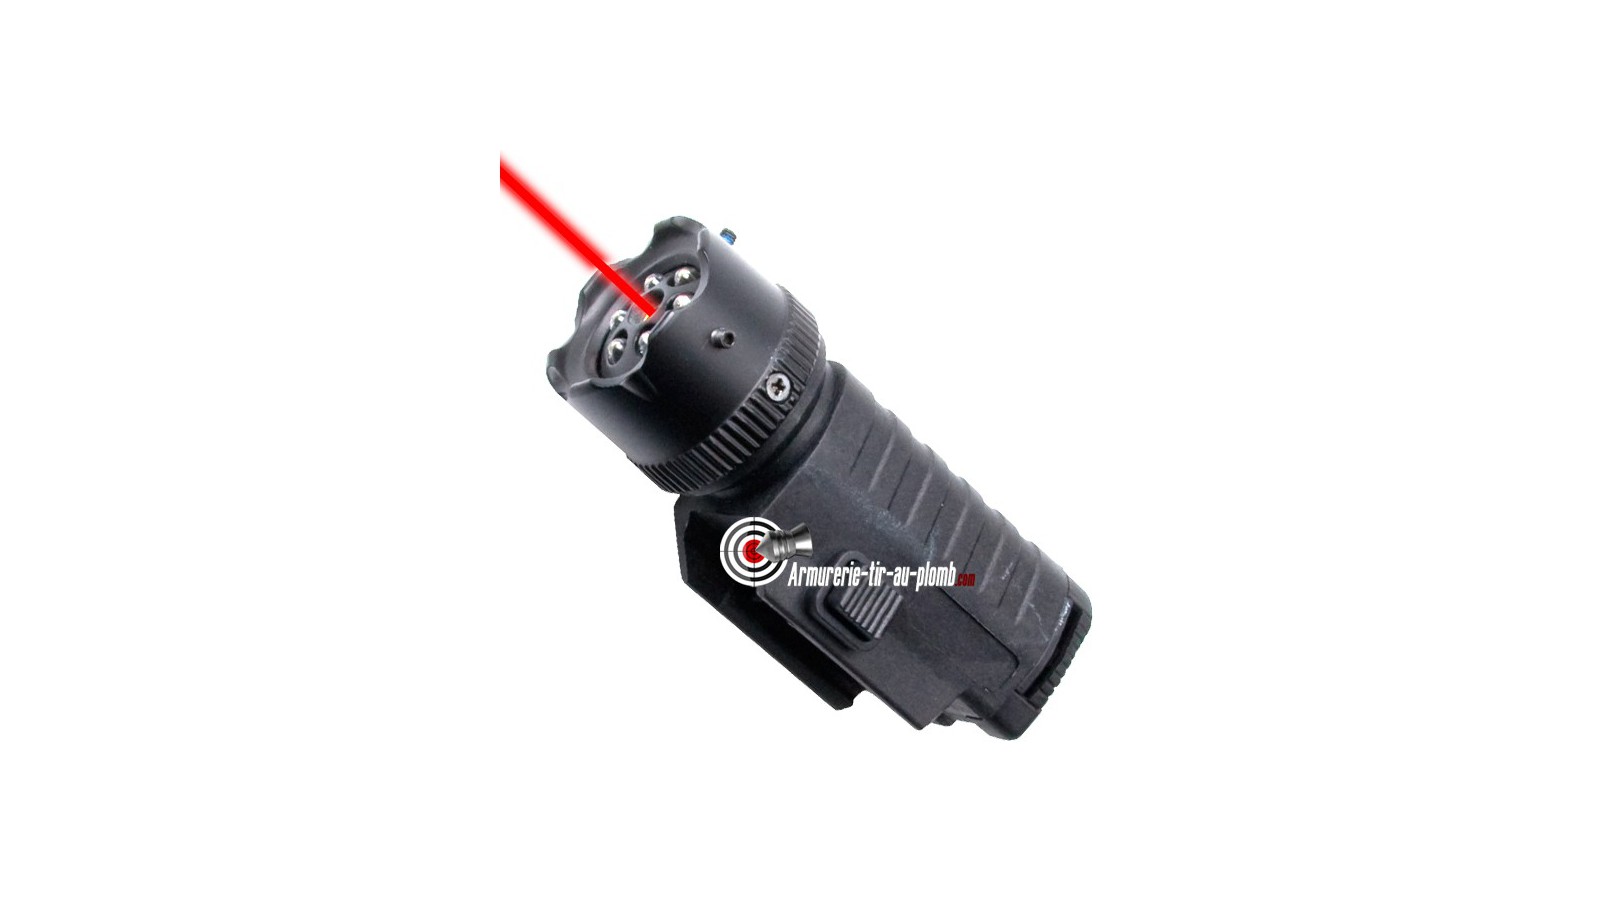 Lampe tactical à LED et laser - 22 mm - Armurerie Tir au Plomb